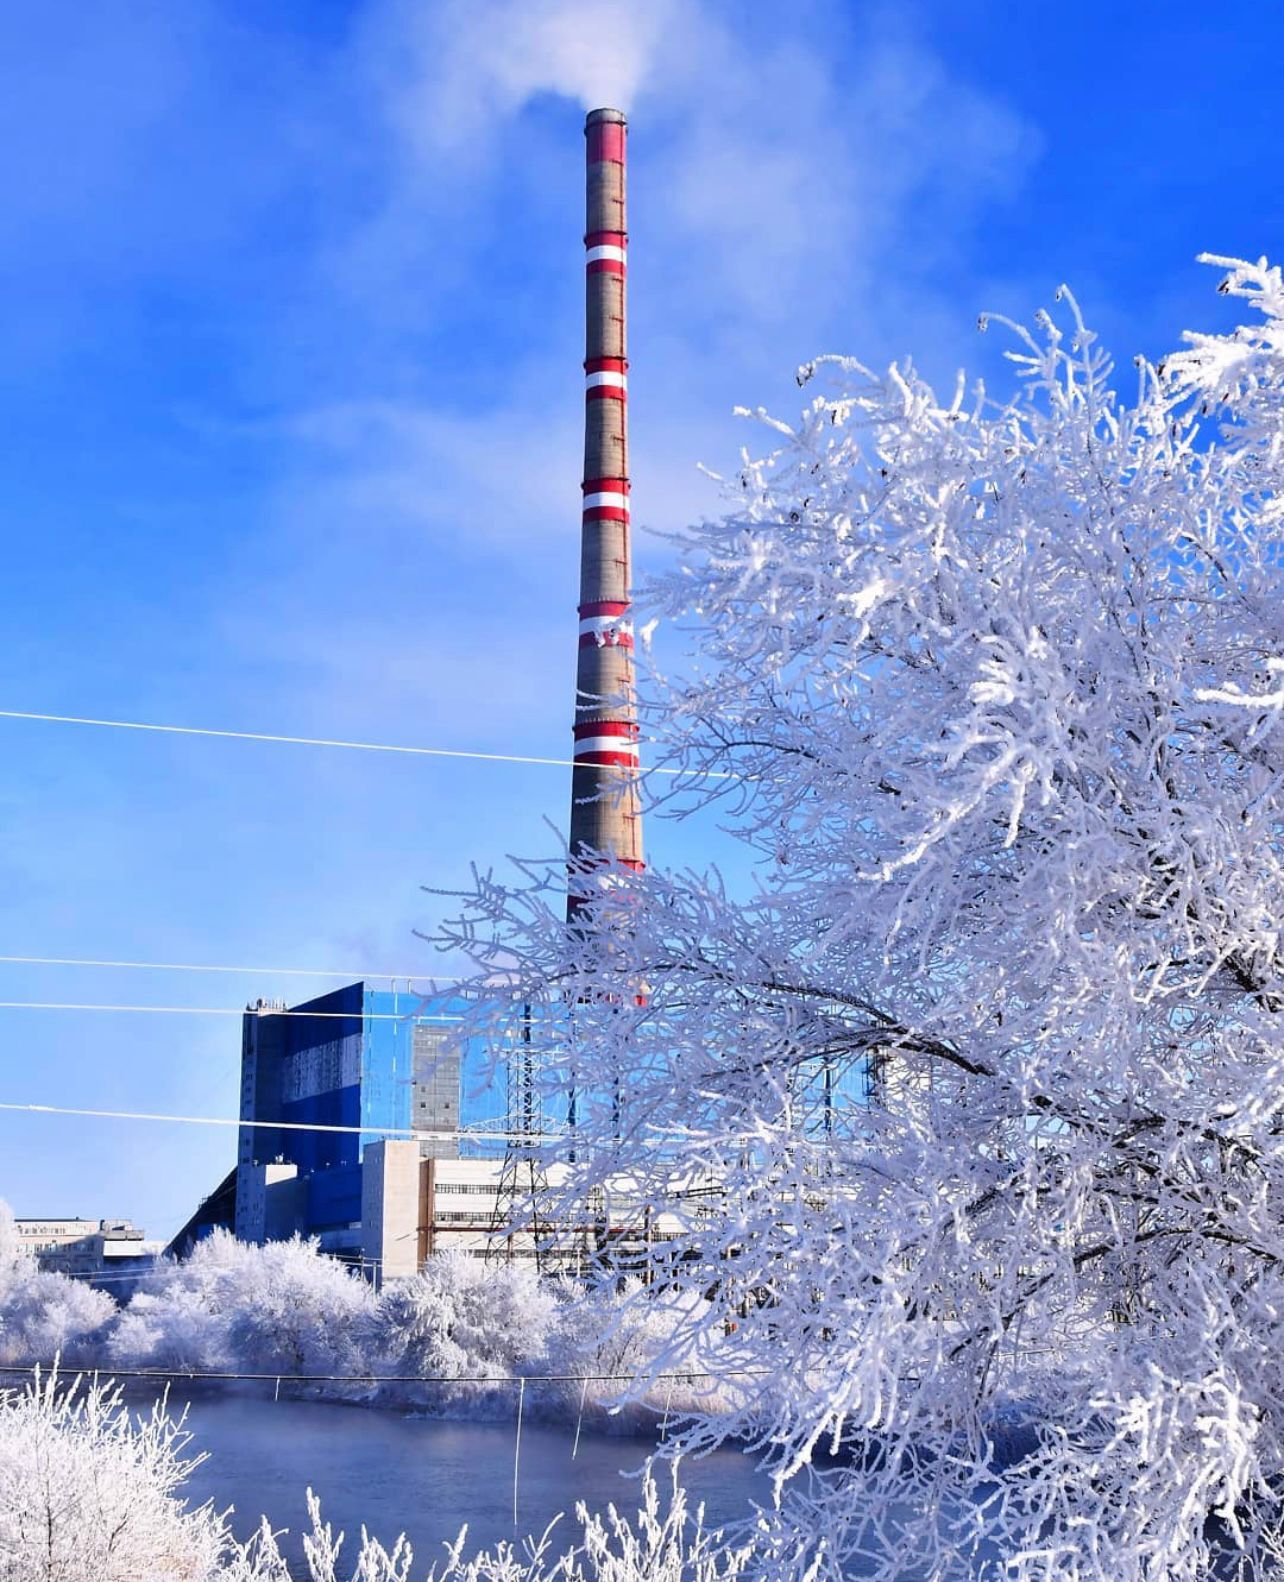 В ряде источников СМИ опубликована информация касательно выявления Прокуратурой Павлодарской области фактов растраты денежных средств, предназначенных на расширение и реконструкцию тепловой электростанции ГРЭС-2 с установкой третьего энергоблока.